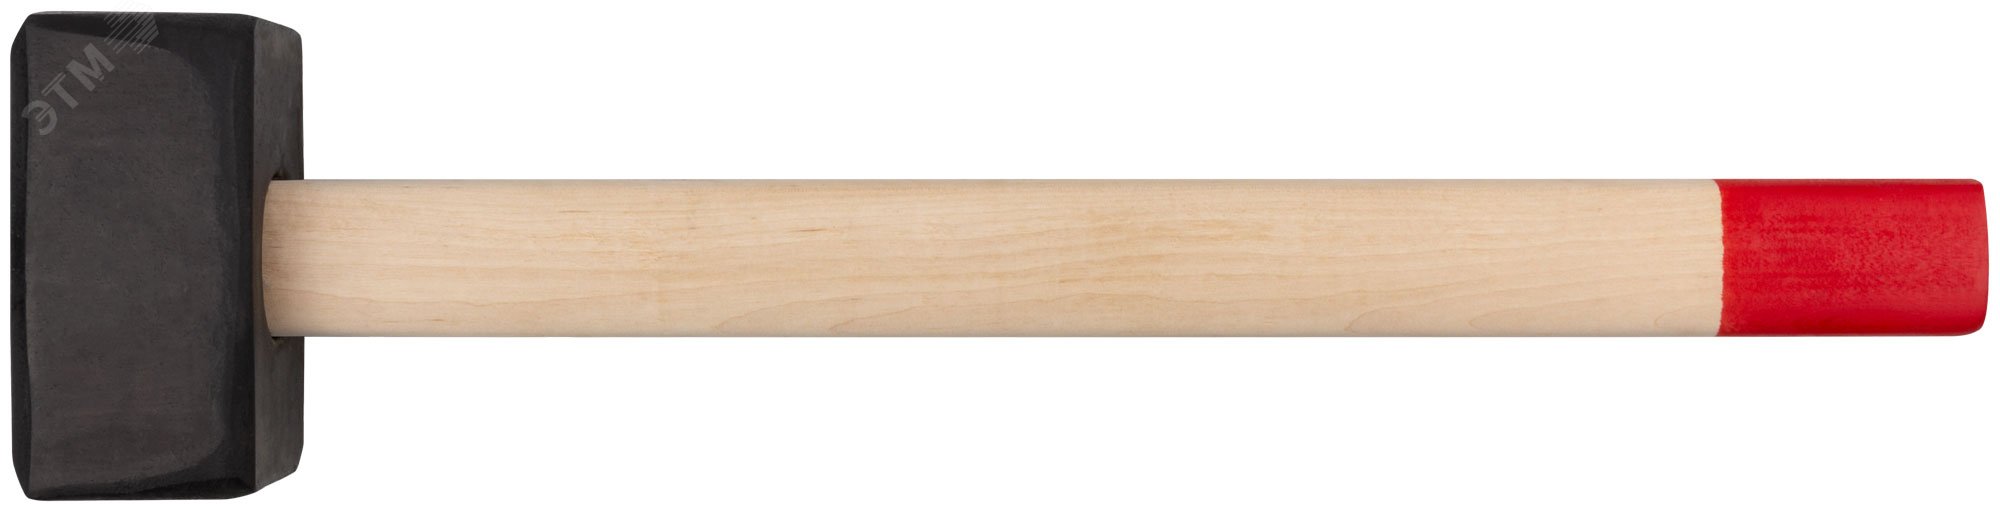 Кувалда кованая в сборе, деревянная ручка 6 кг 45026 КУРС РОС - превью